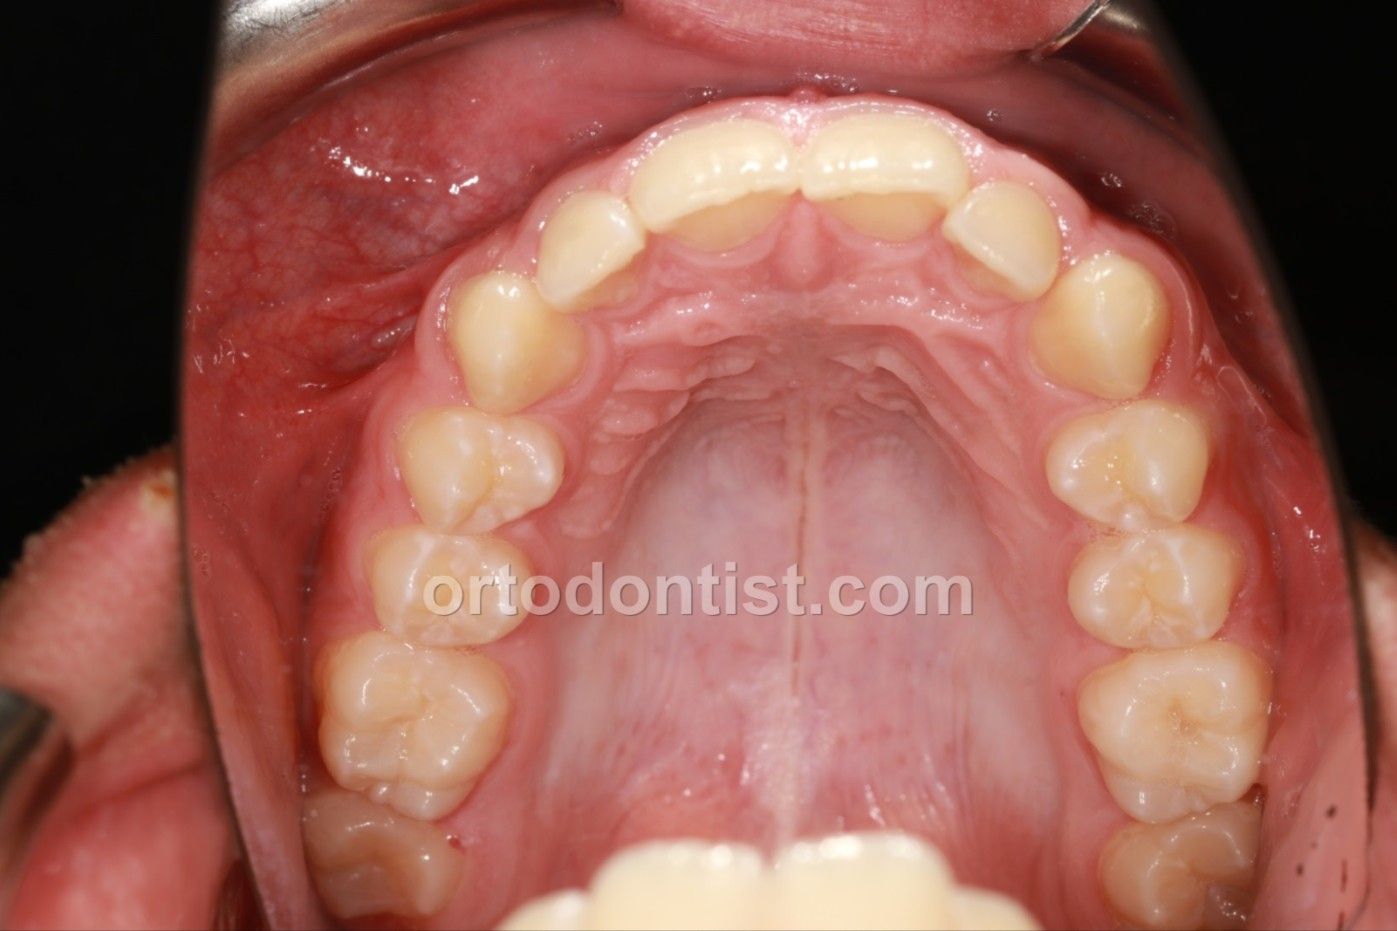 M.Emeklier Dijital Ortodonti Ortoaligner -image